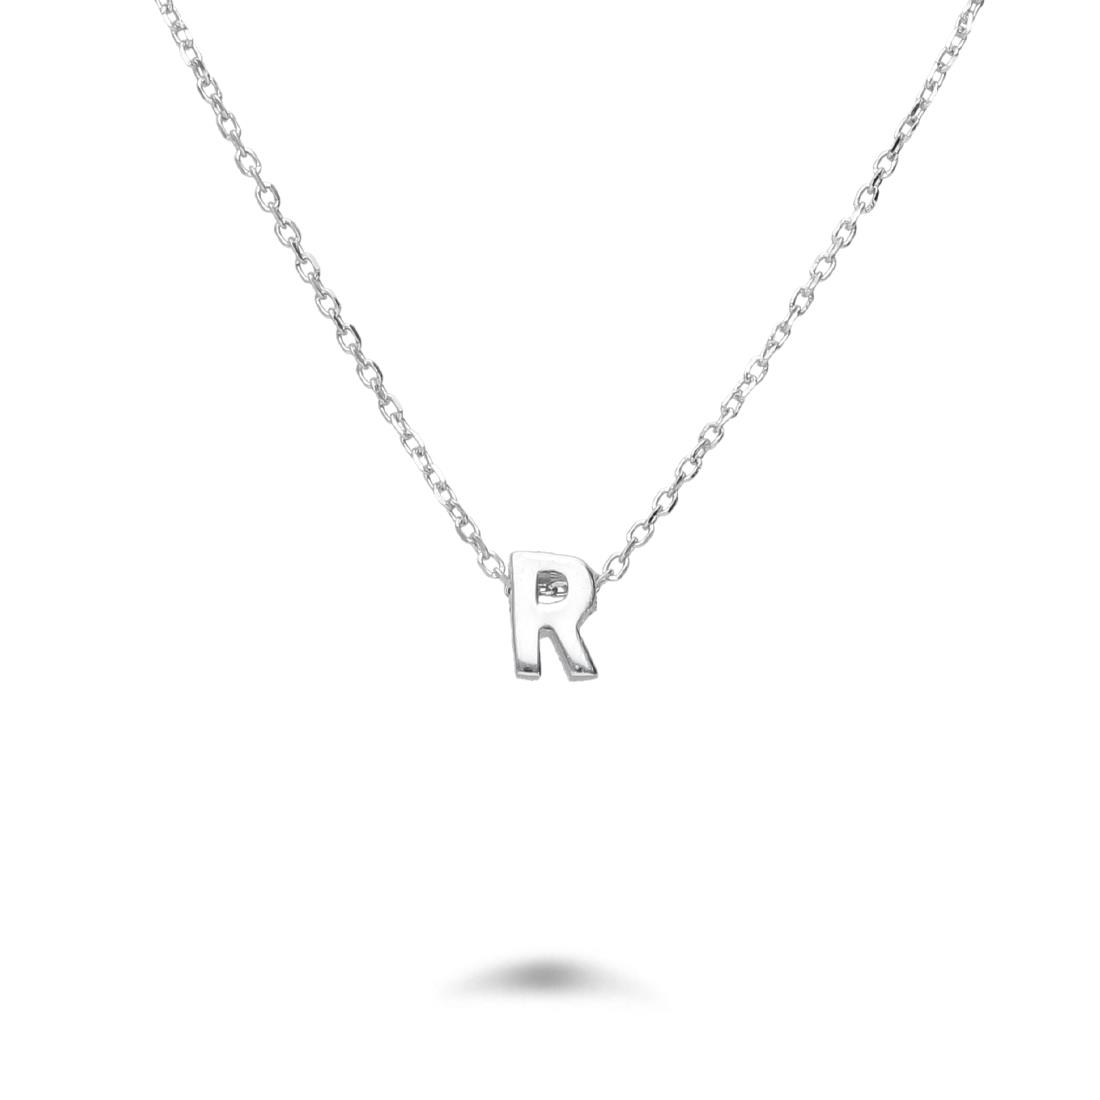 Rolò necklace in rhodium-plated silver with letter R - DESIDERI PREZIOSI